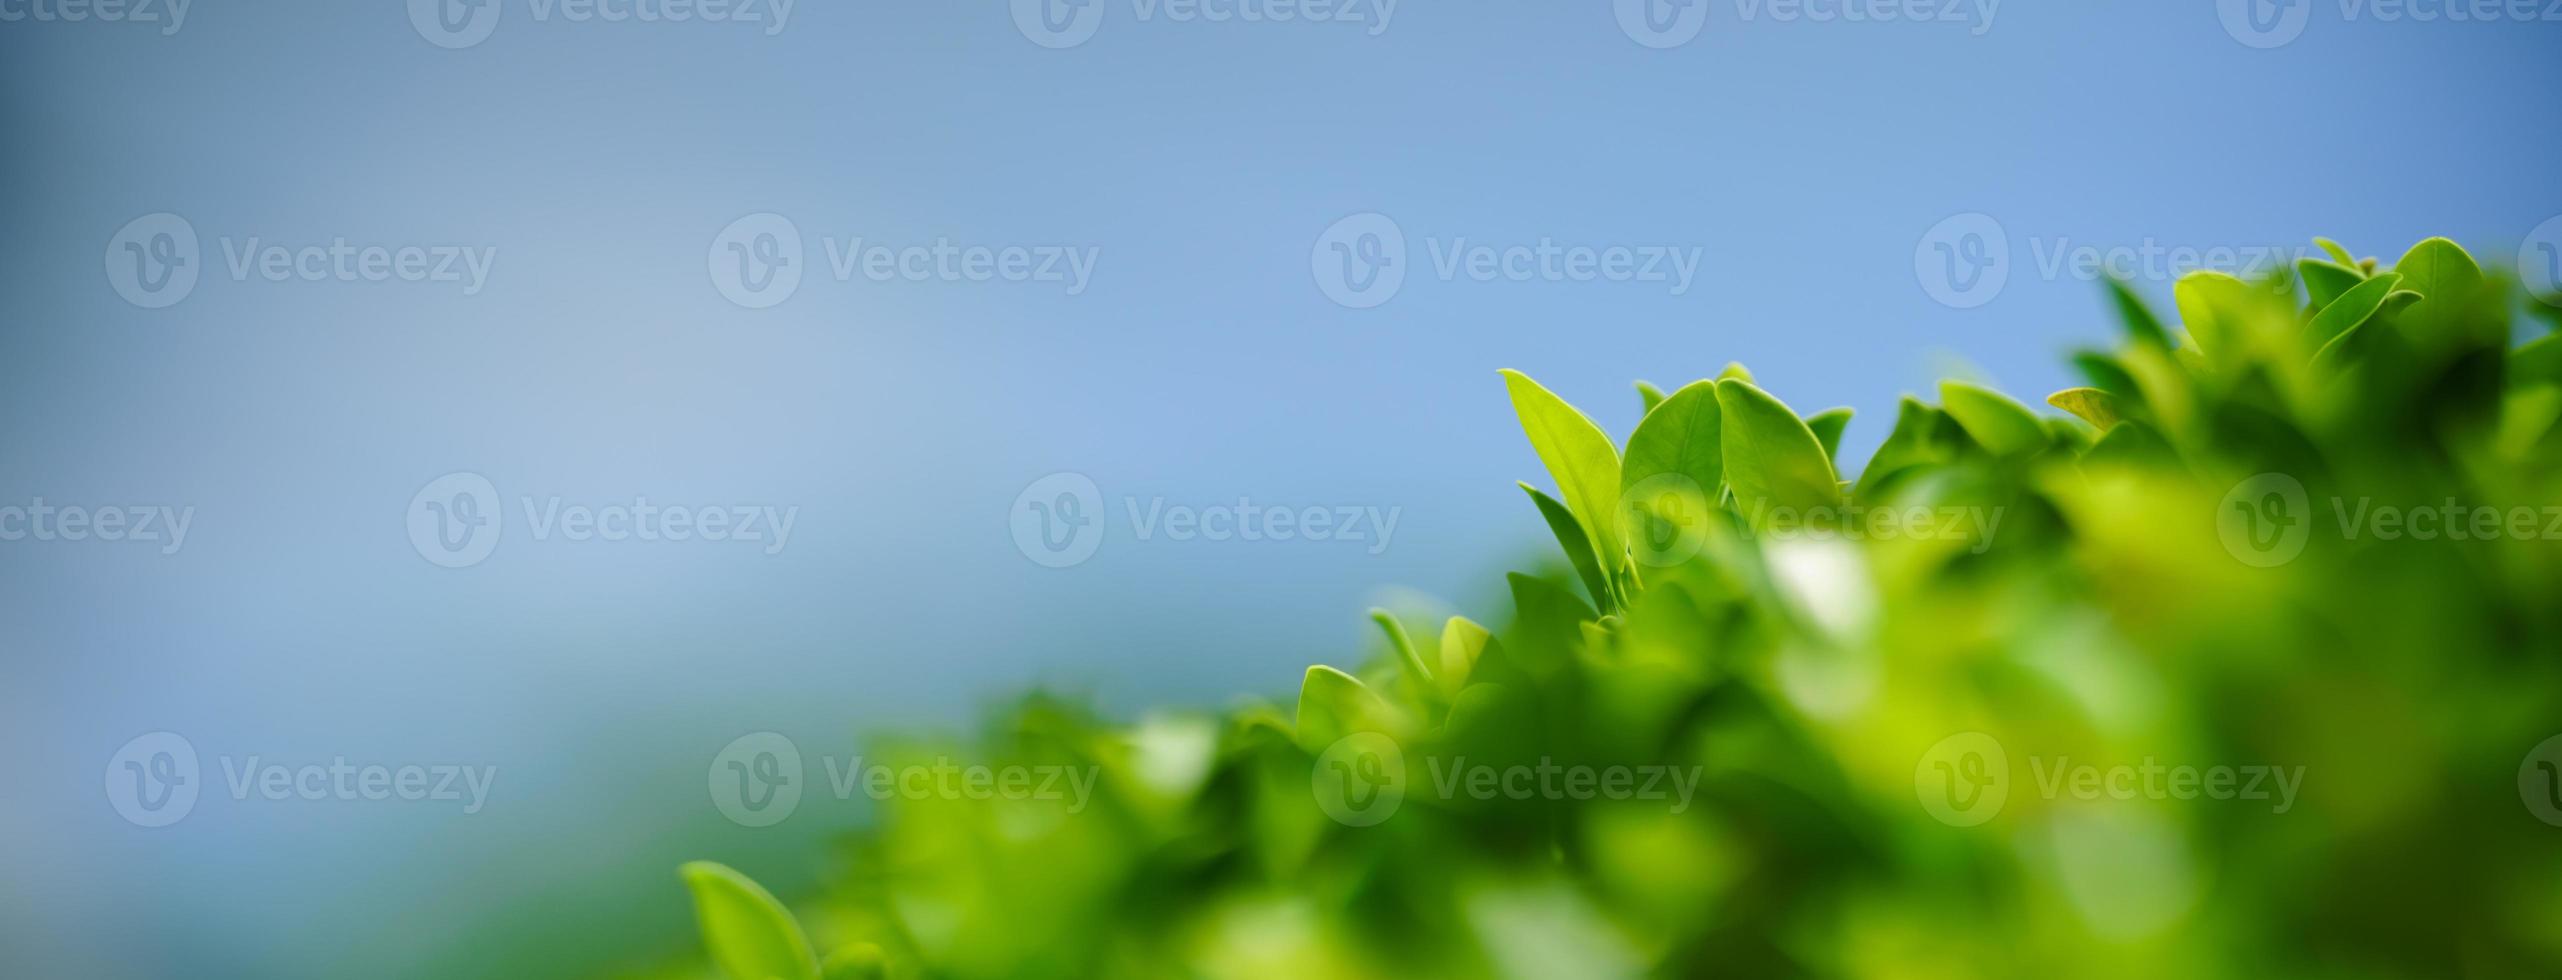 Nahaufnahme des grünen Blattes der schönen Naturansicht auf unscharfem Grün mit blauem Himmel als Hintergrund im Garten mit Kopienraum unter Verwendung als Hintergrunddeckblattkonzept. foto